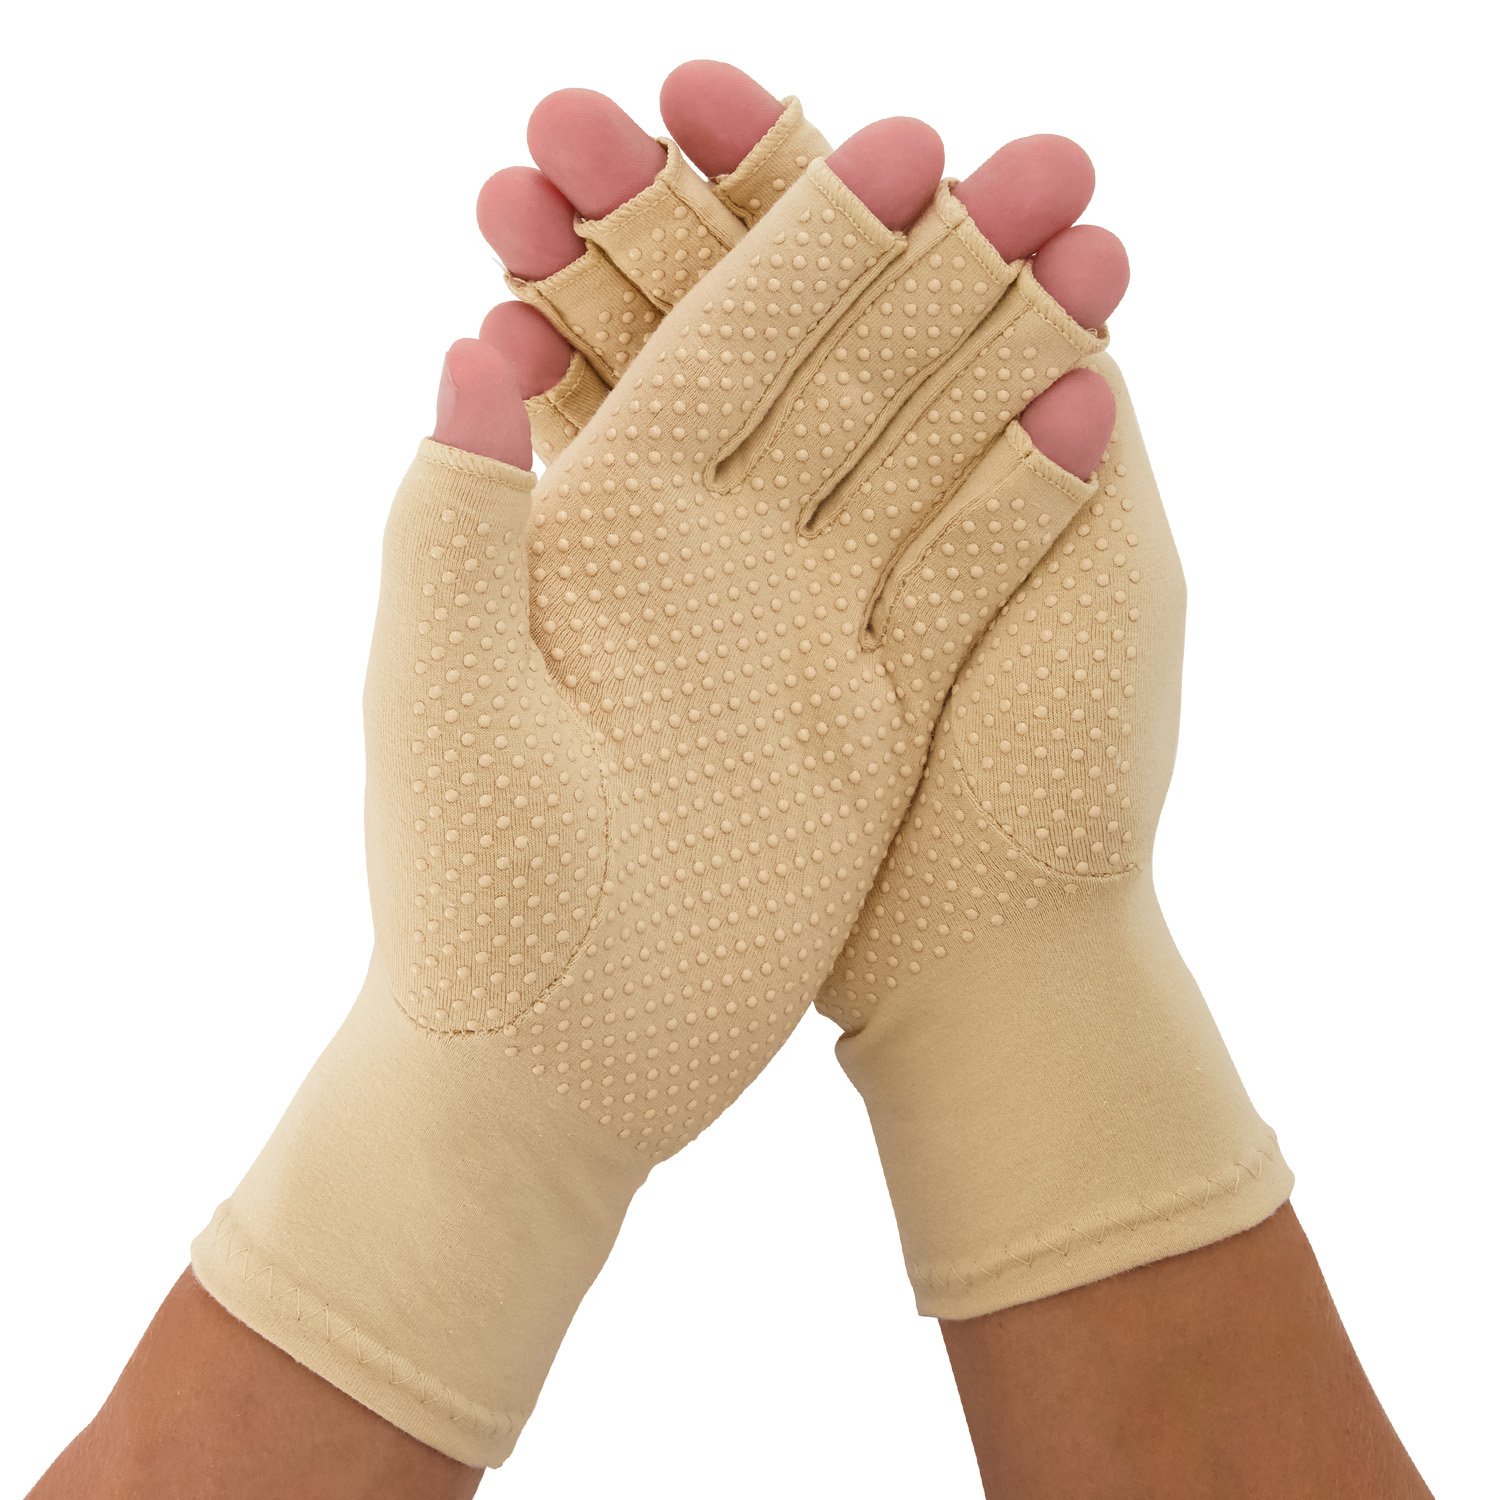 medidu rheumatoid arthritis osteoarthritis gloves with anti-slip layer